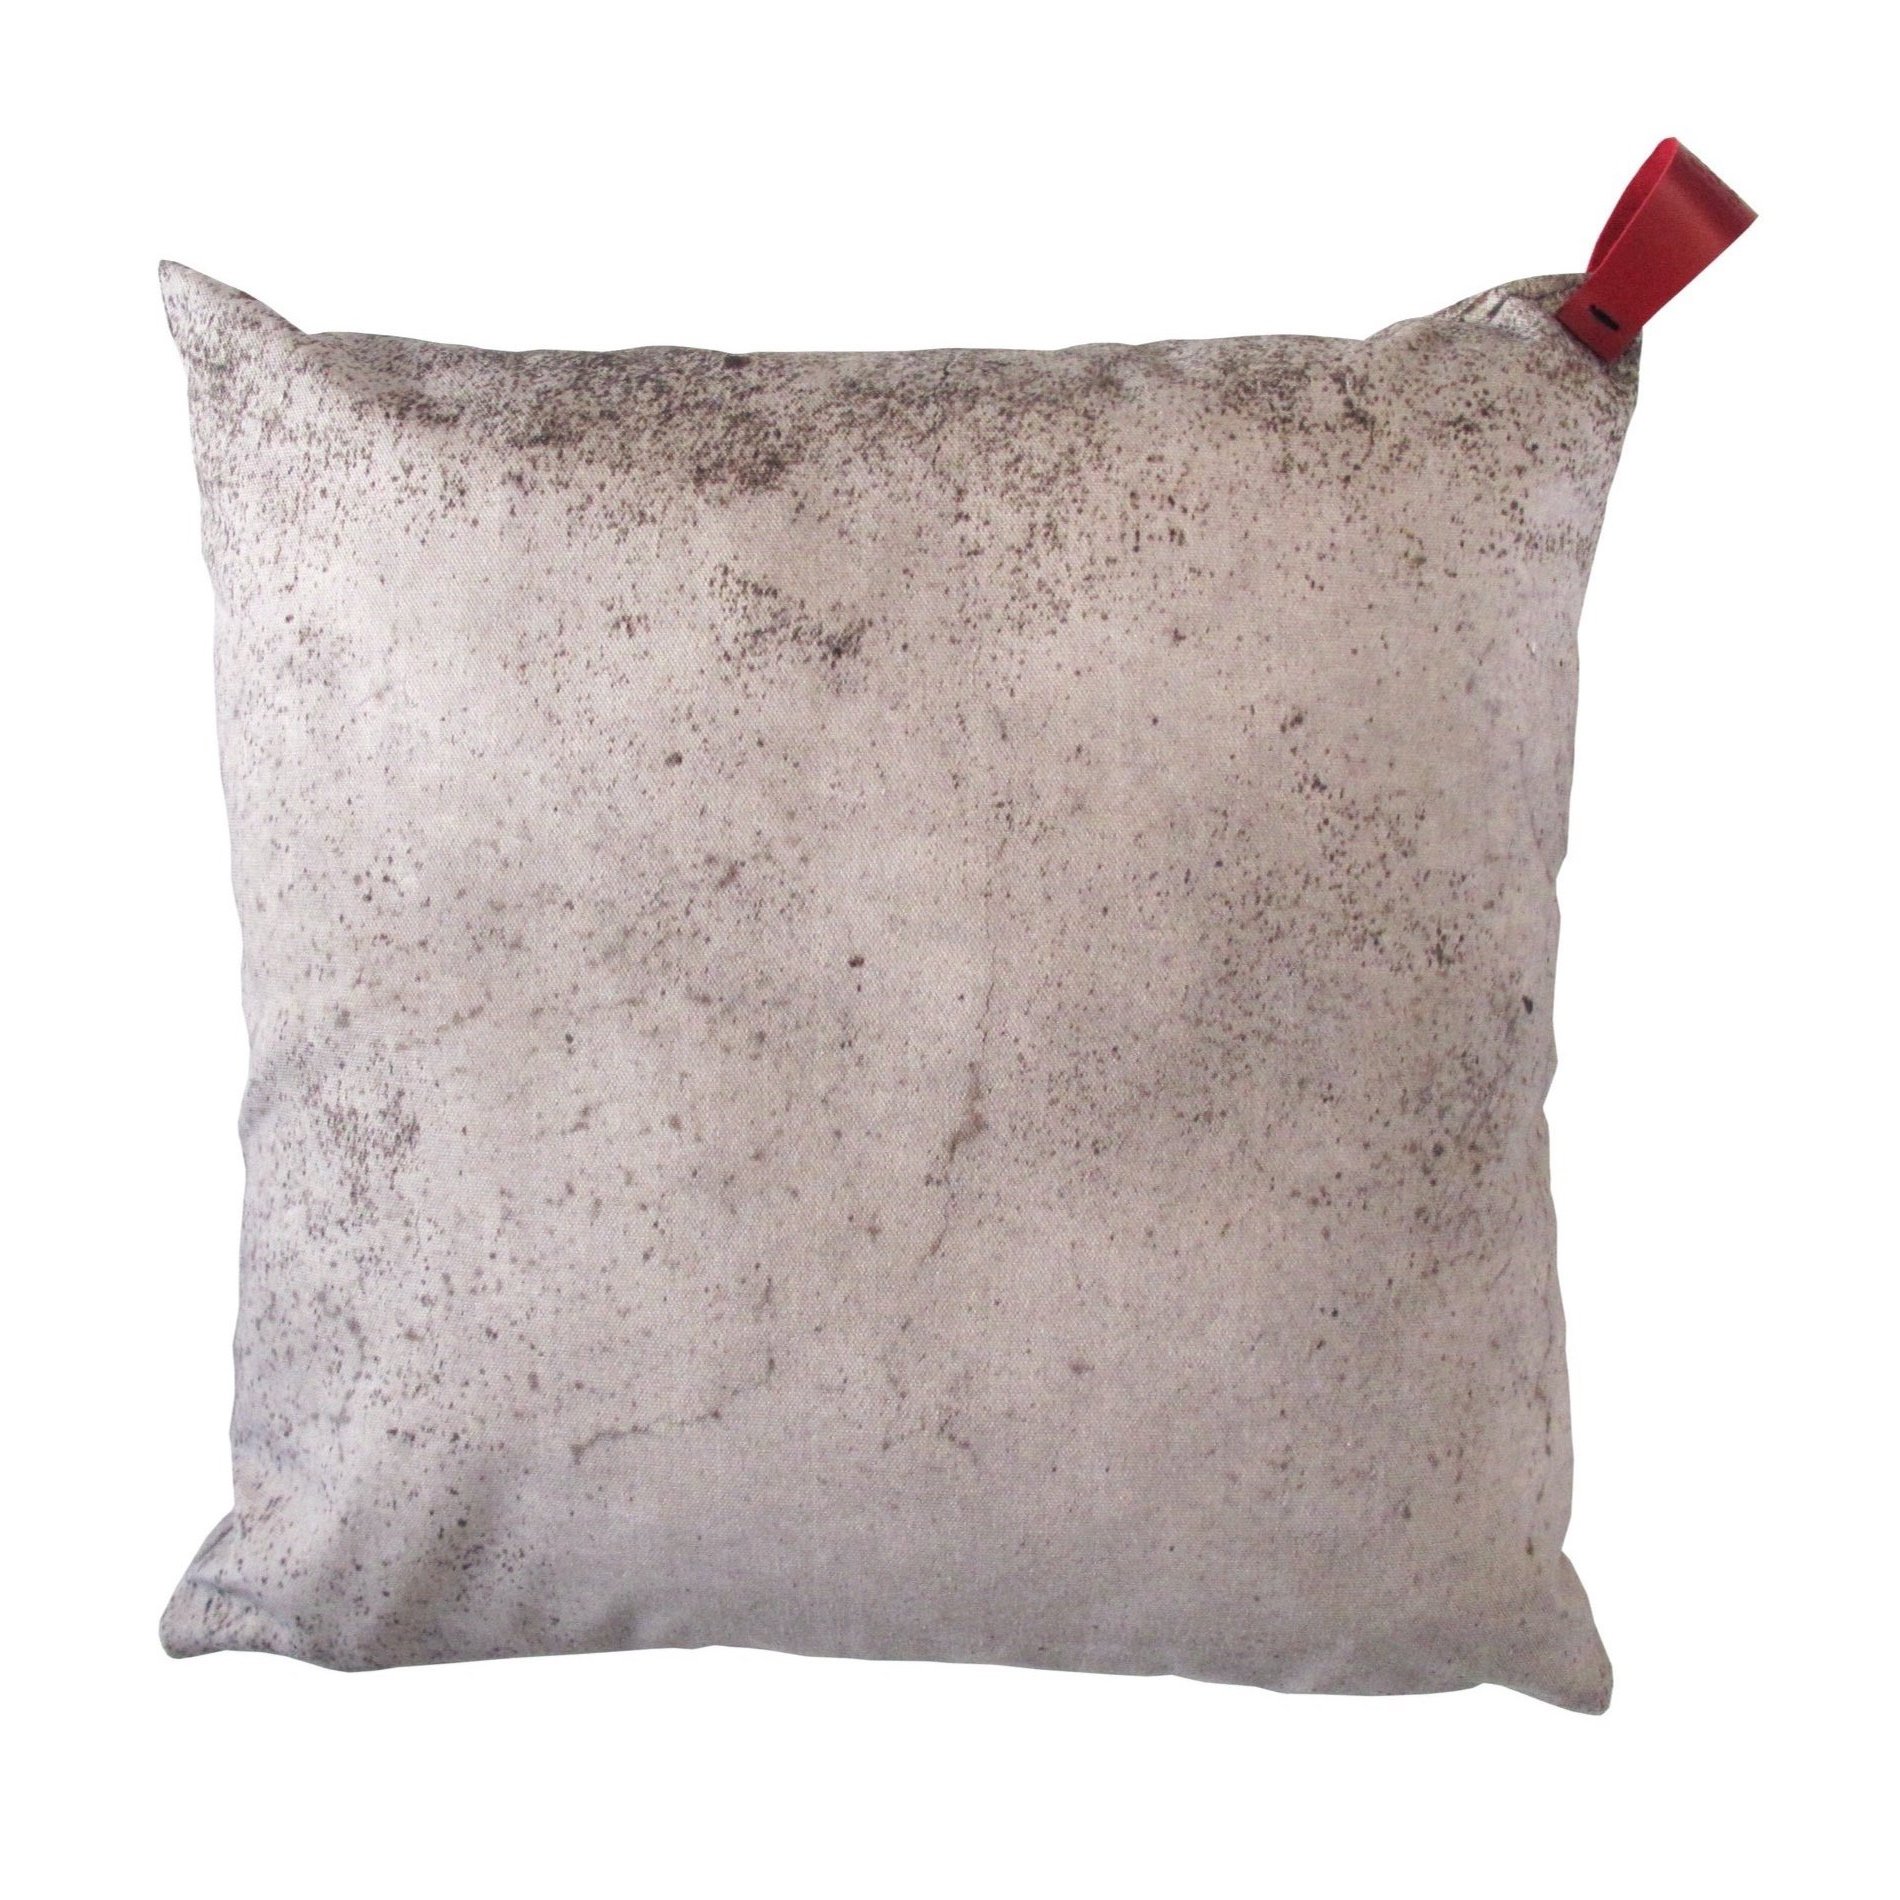 lottacole-concrete-cushion.jpg